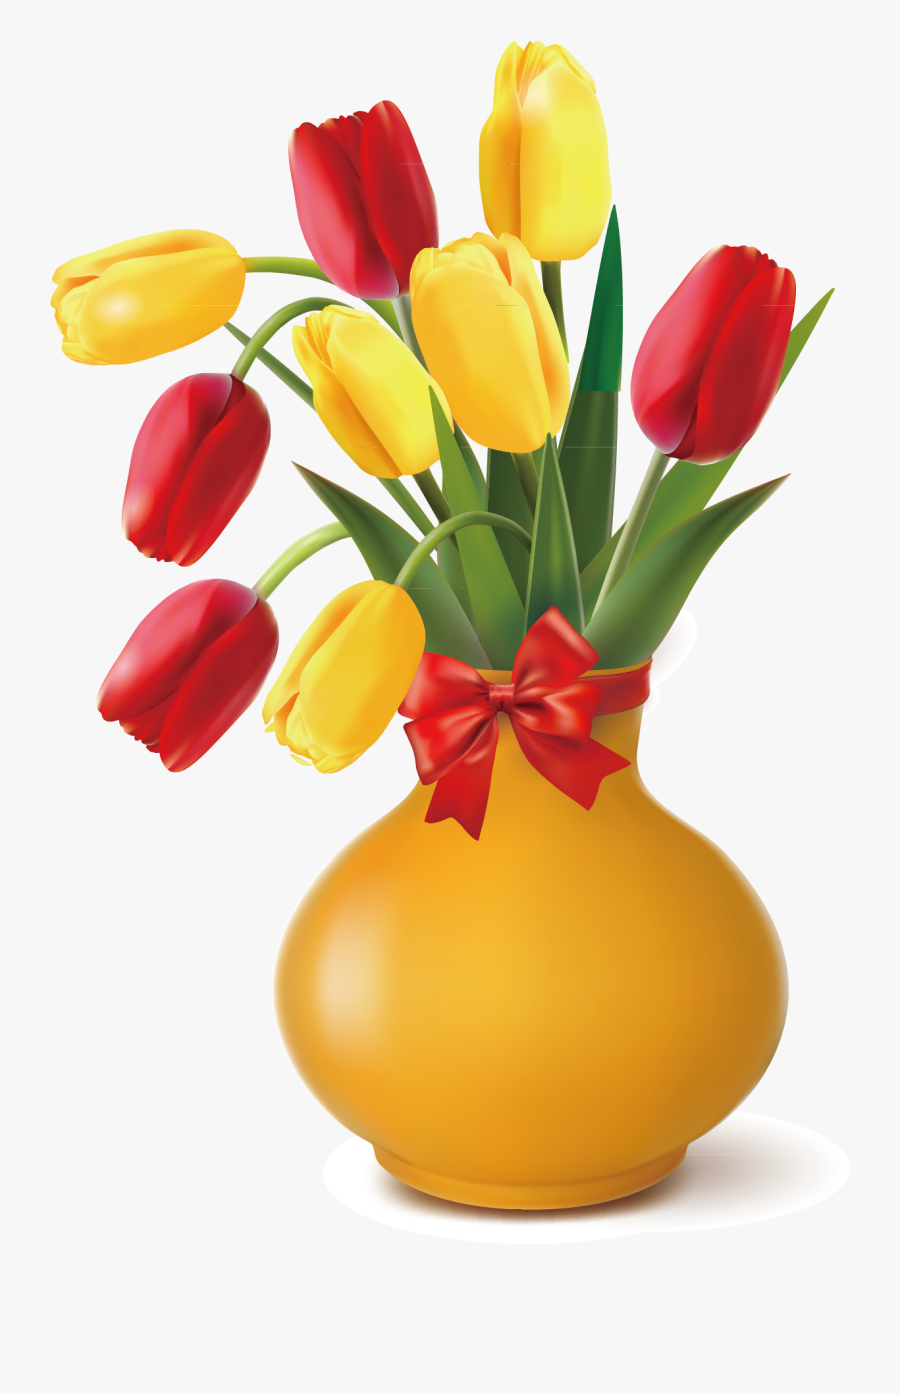 Vase Clipart Tulip - Transparent Background Flower Vase Clipart, Transparent Clipart